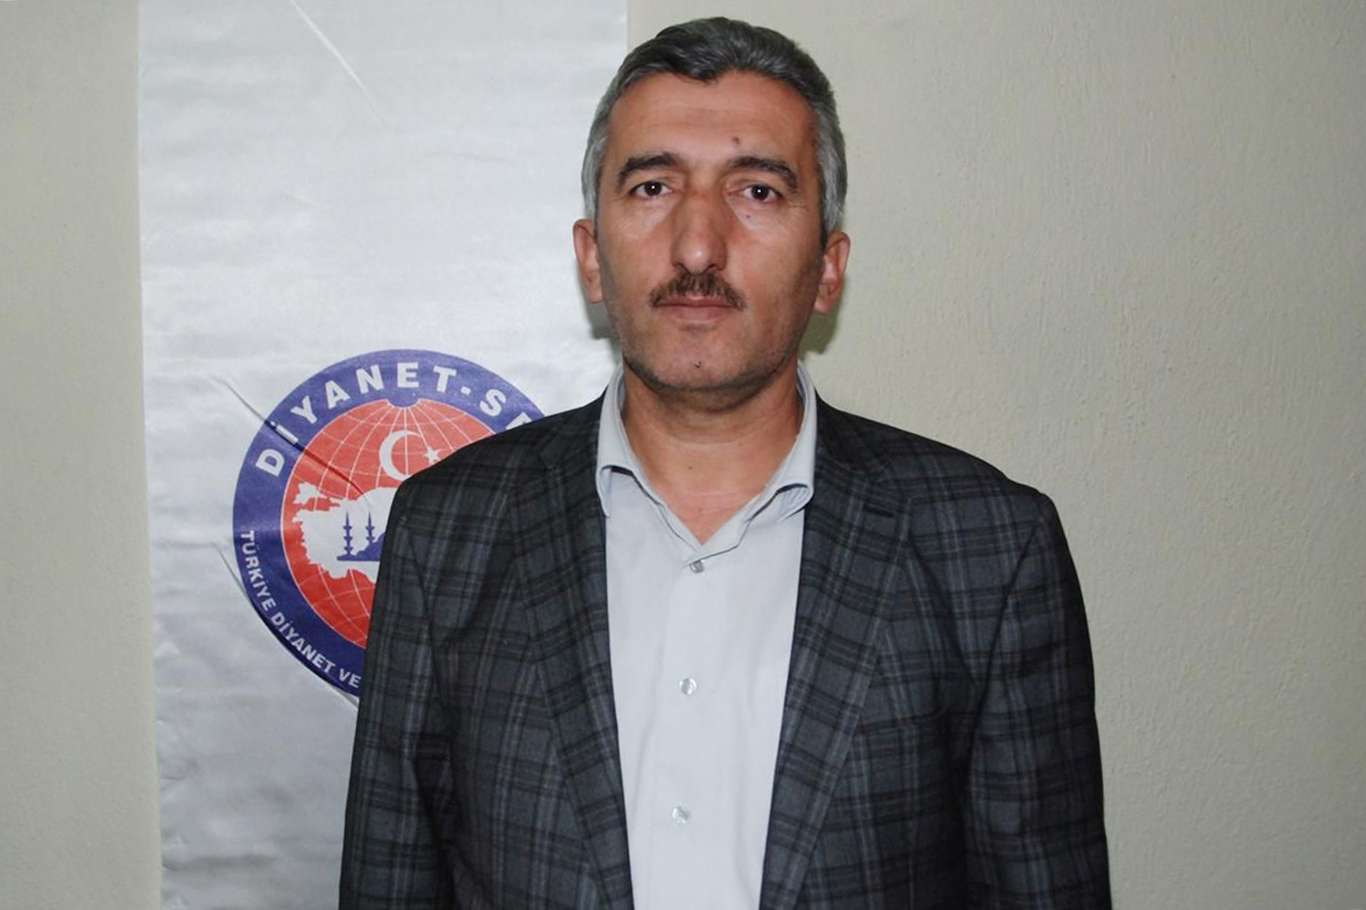 Diyanet-Sen Bitlis Şube Başkanı Durak: "Doğumdan ölüme kadar hep halkımızın yanındayız"